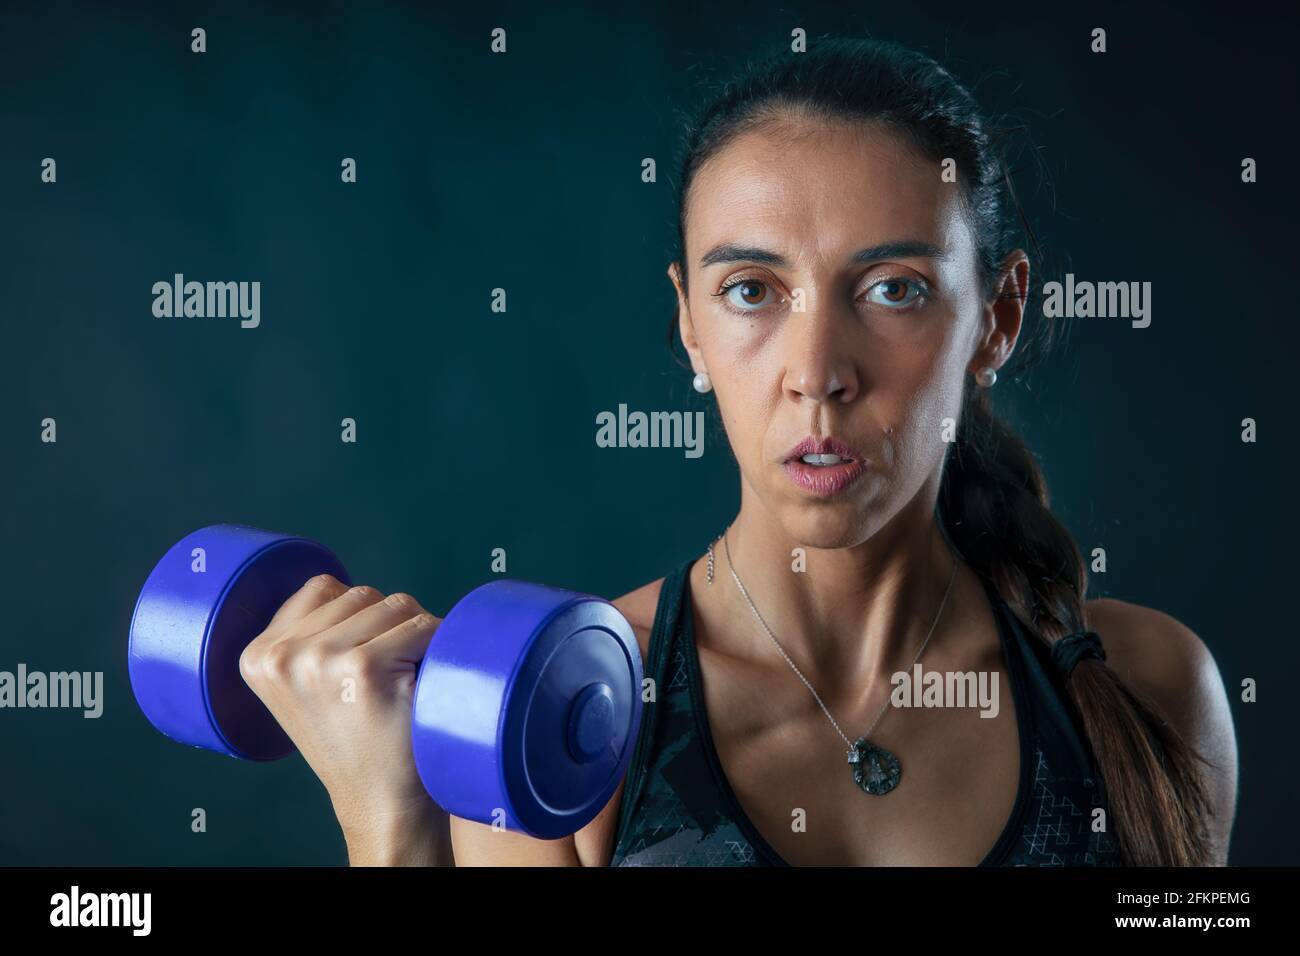 ritratto di donna che solleva pesi in esercizio fisico isolato su sfondo scuro. Foto Stock